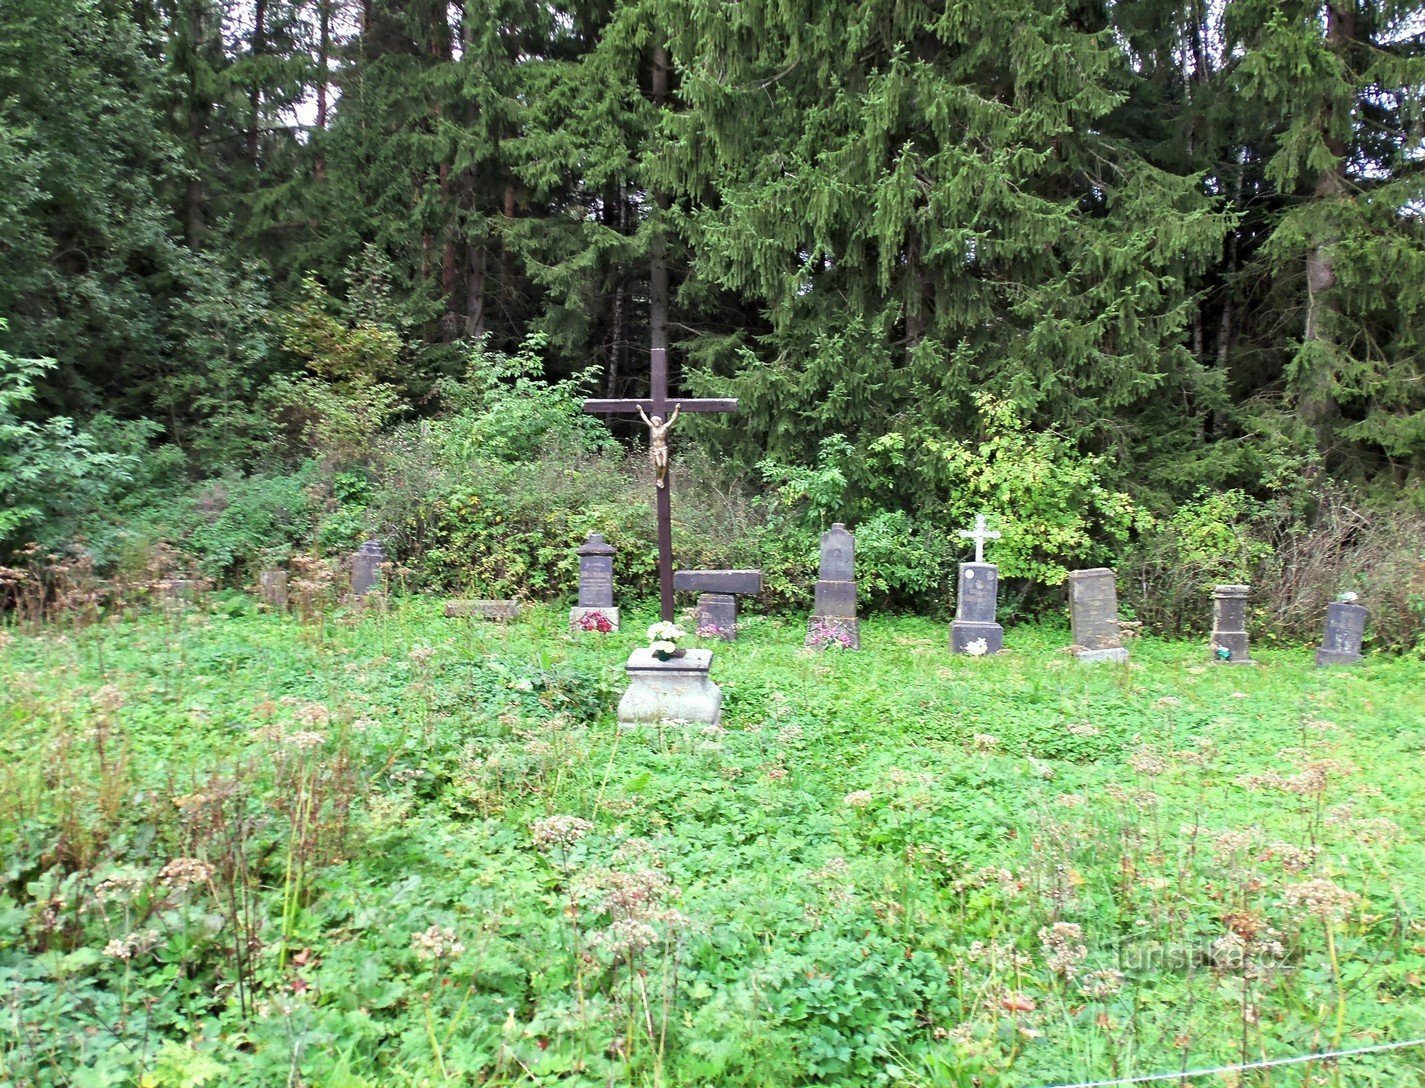 Có một bãi đậu xe tại nghĩa trang rừng này và rất dễ bỏ lỡ